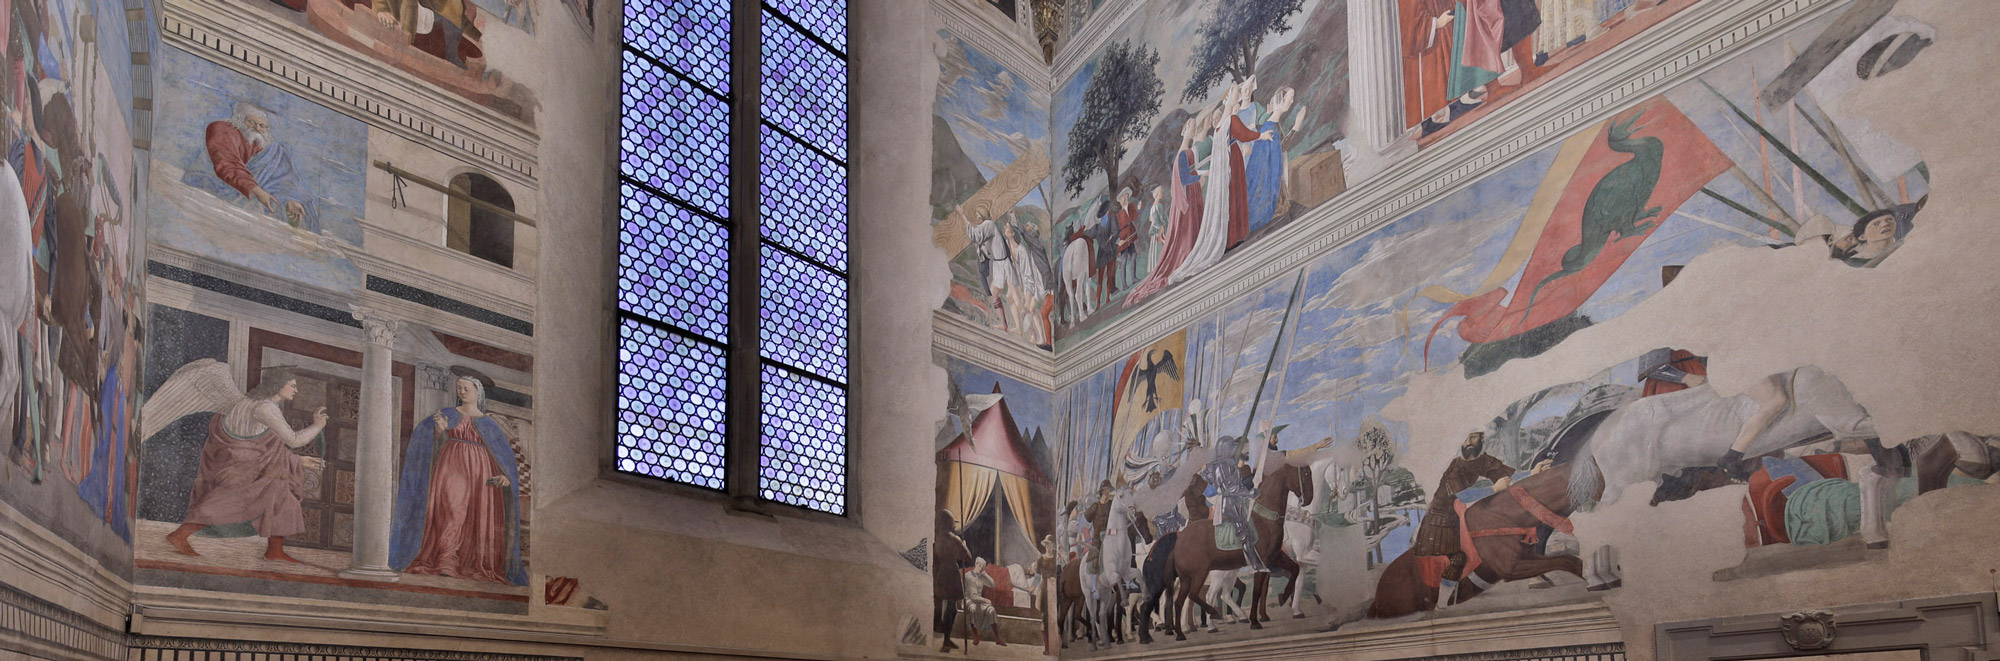 Piero della Francesca met sa lumière au goût du jour